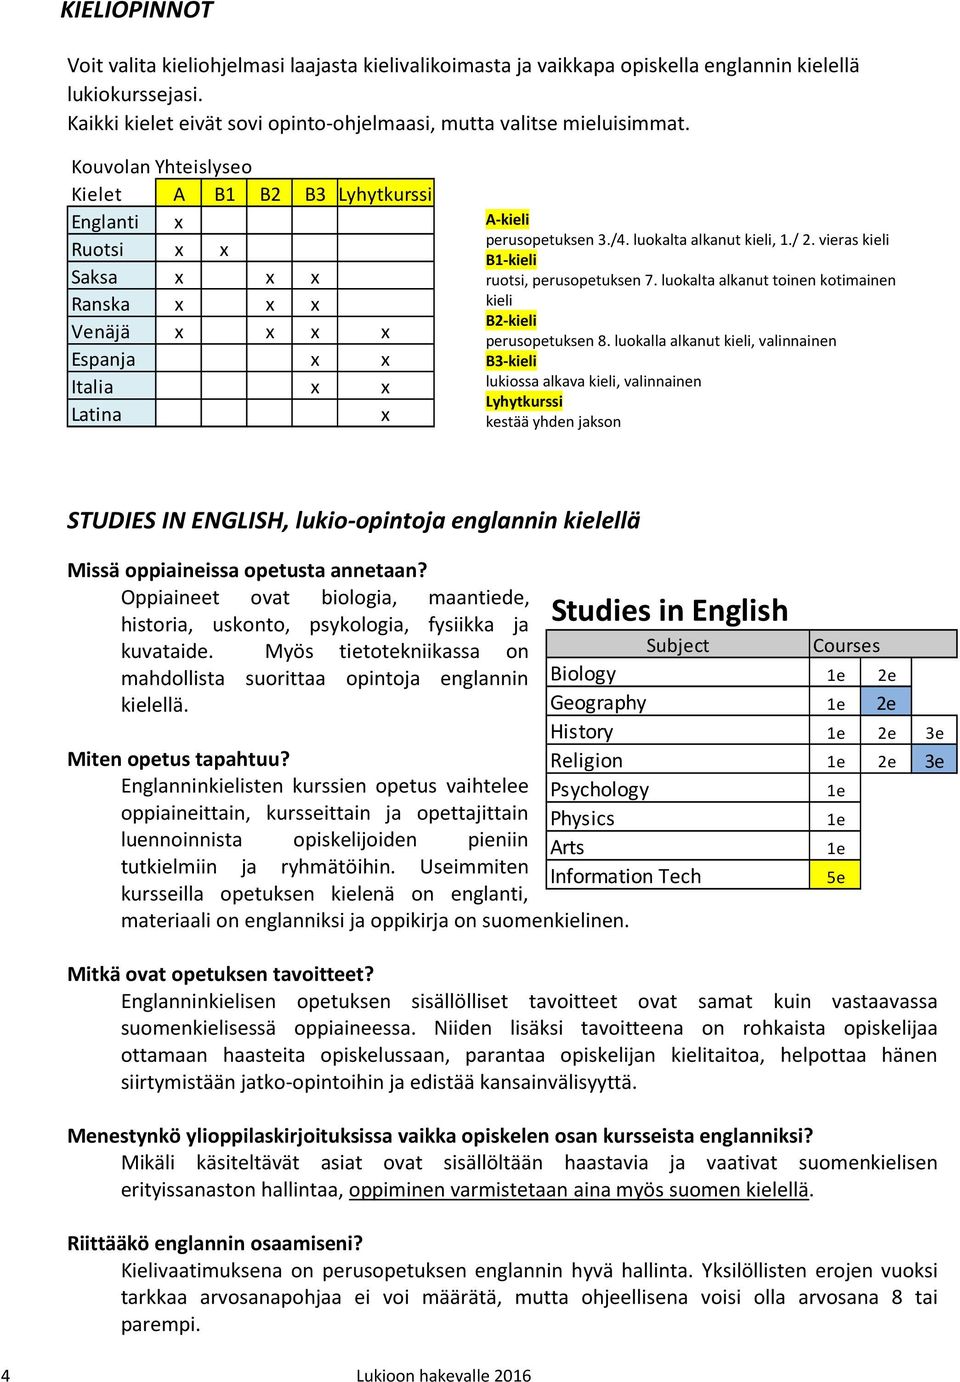 / 2. vieras kieli B1-kieli ruotsi, perusopetuksen 7. luokalta alkanut toinen kotimainen kieli B2-kieli perusopetuksen 8.